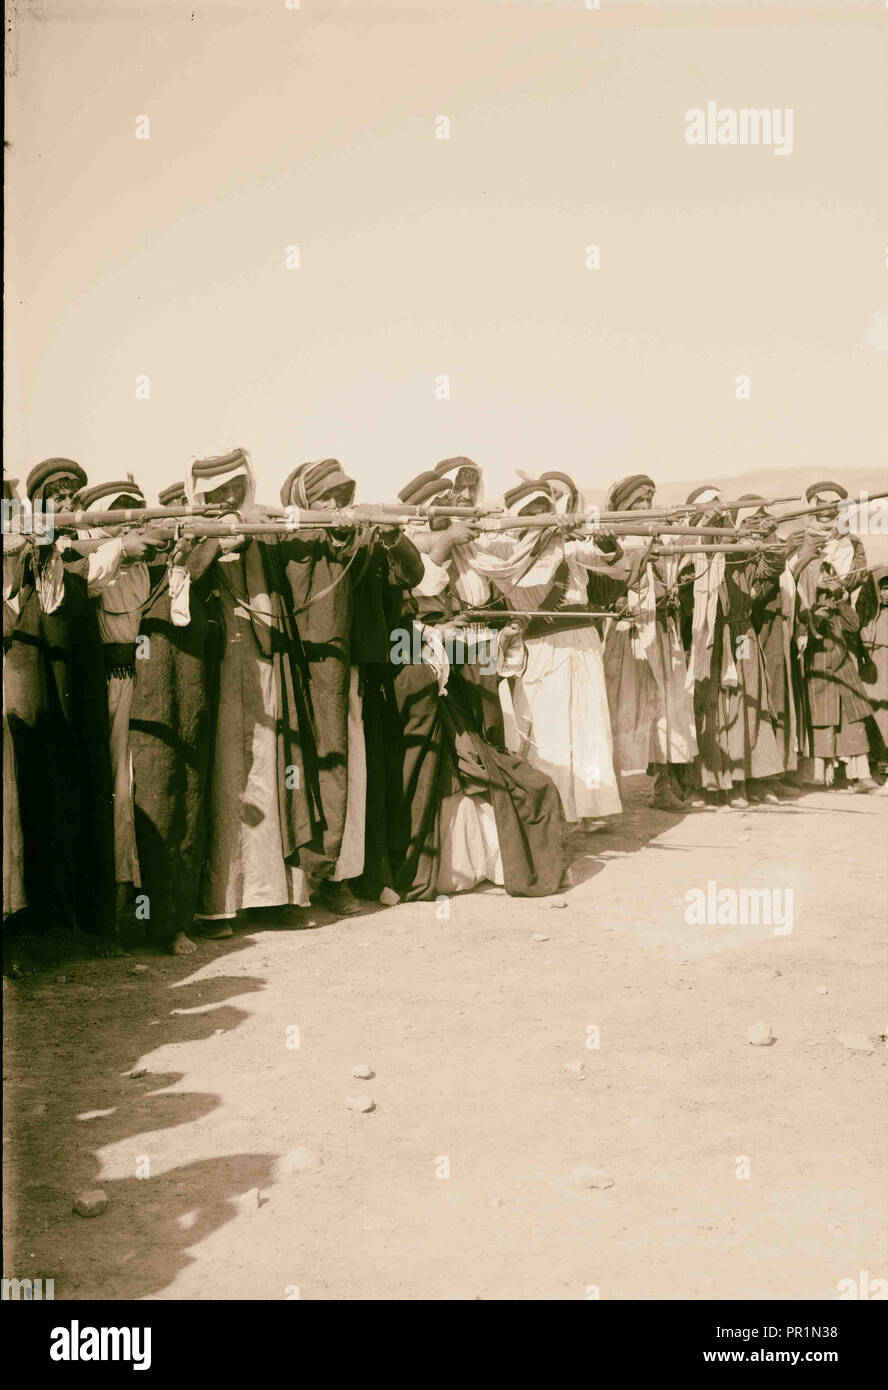 Bedouin riflemen Bundesschiessen 1898, die Beduinen sind nomadisierenden arabischen Völker, die die Wüste Regionen bewohnt Stockfoto